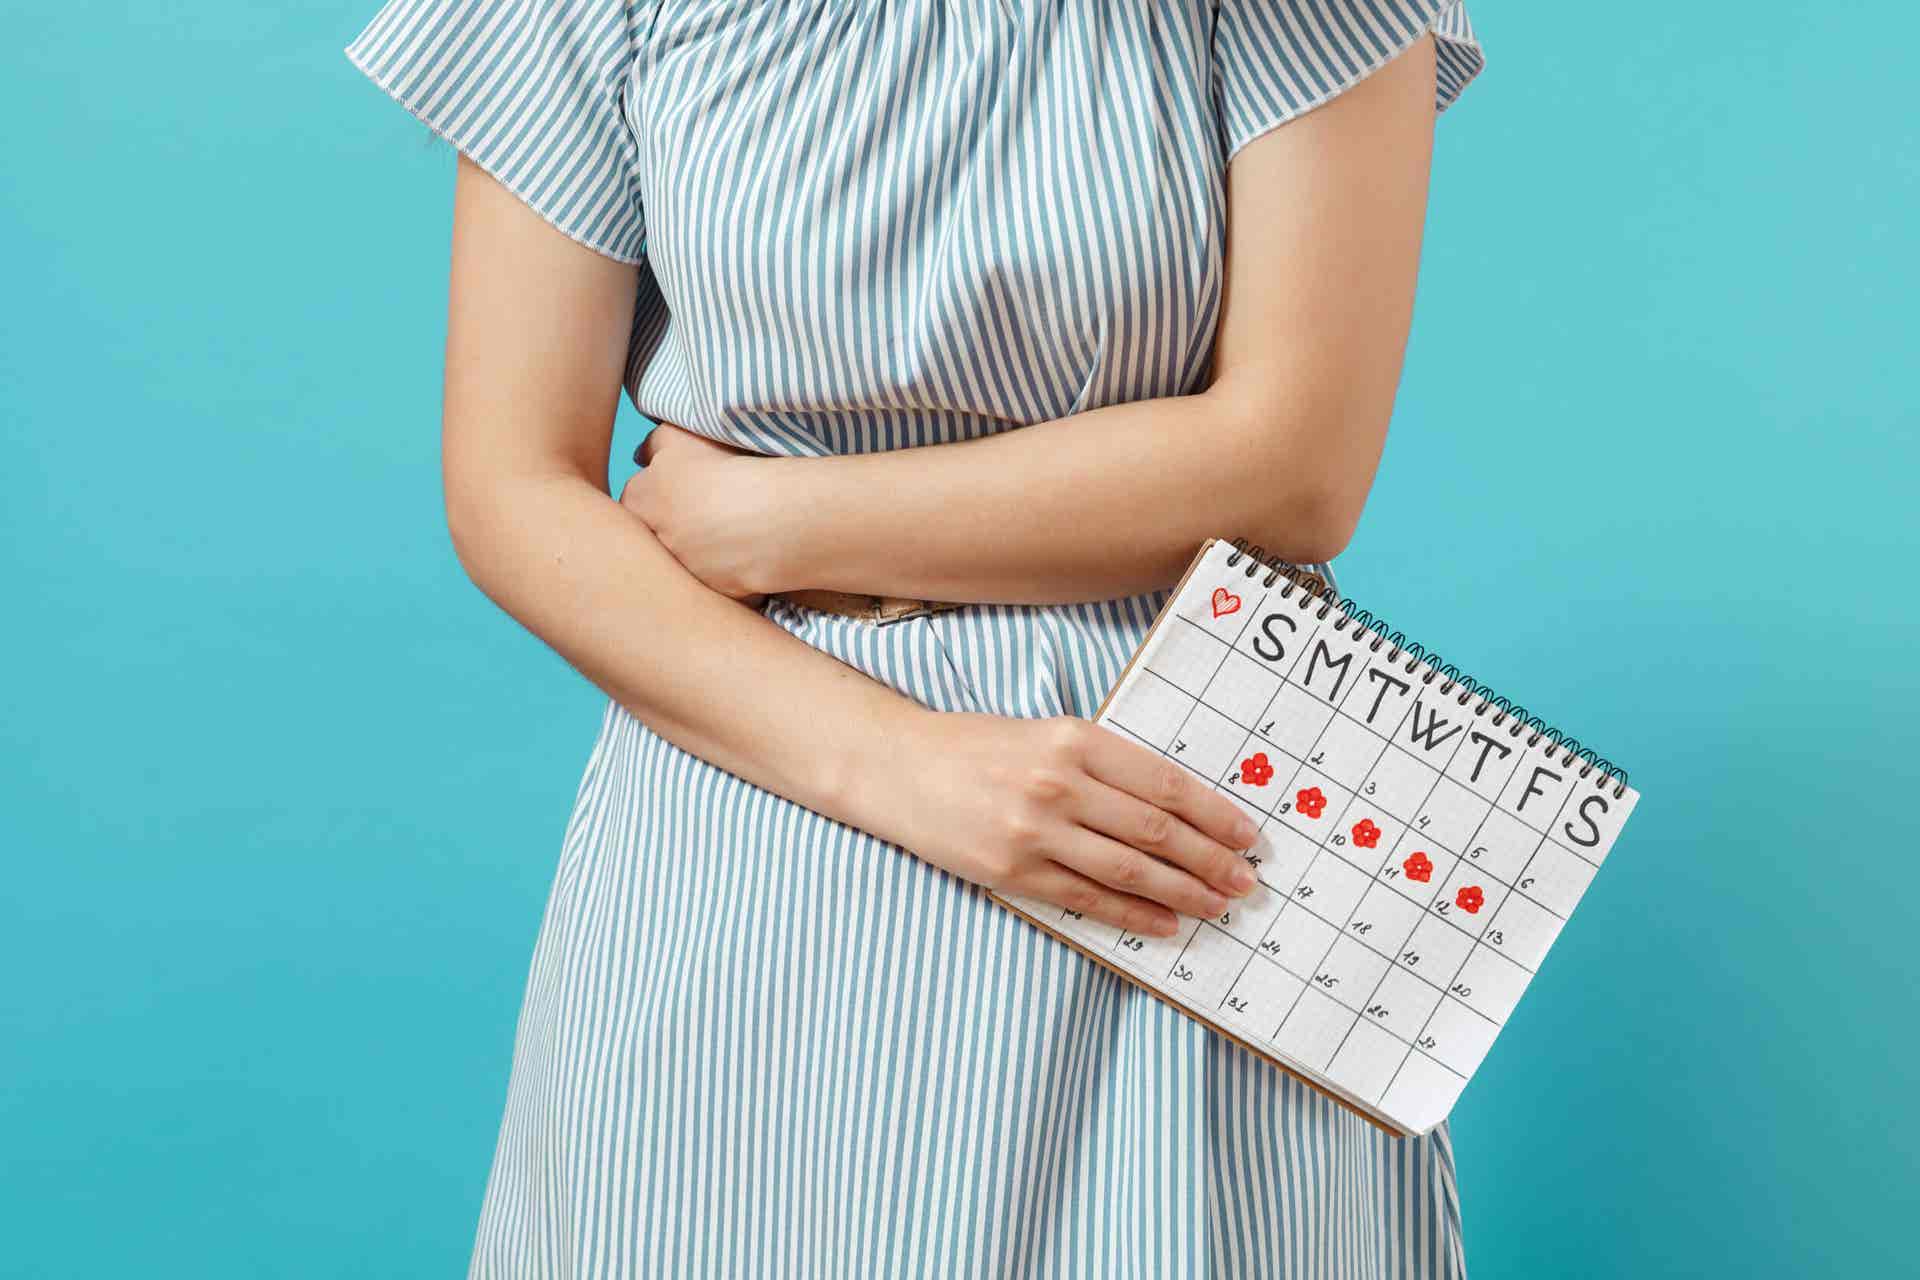 Brust- und Brustwarzenveränderungen während der Menstruation